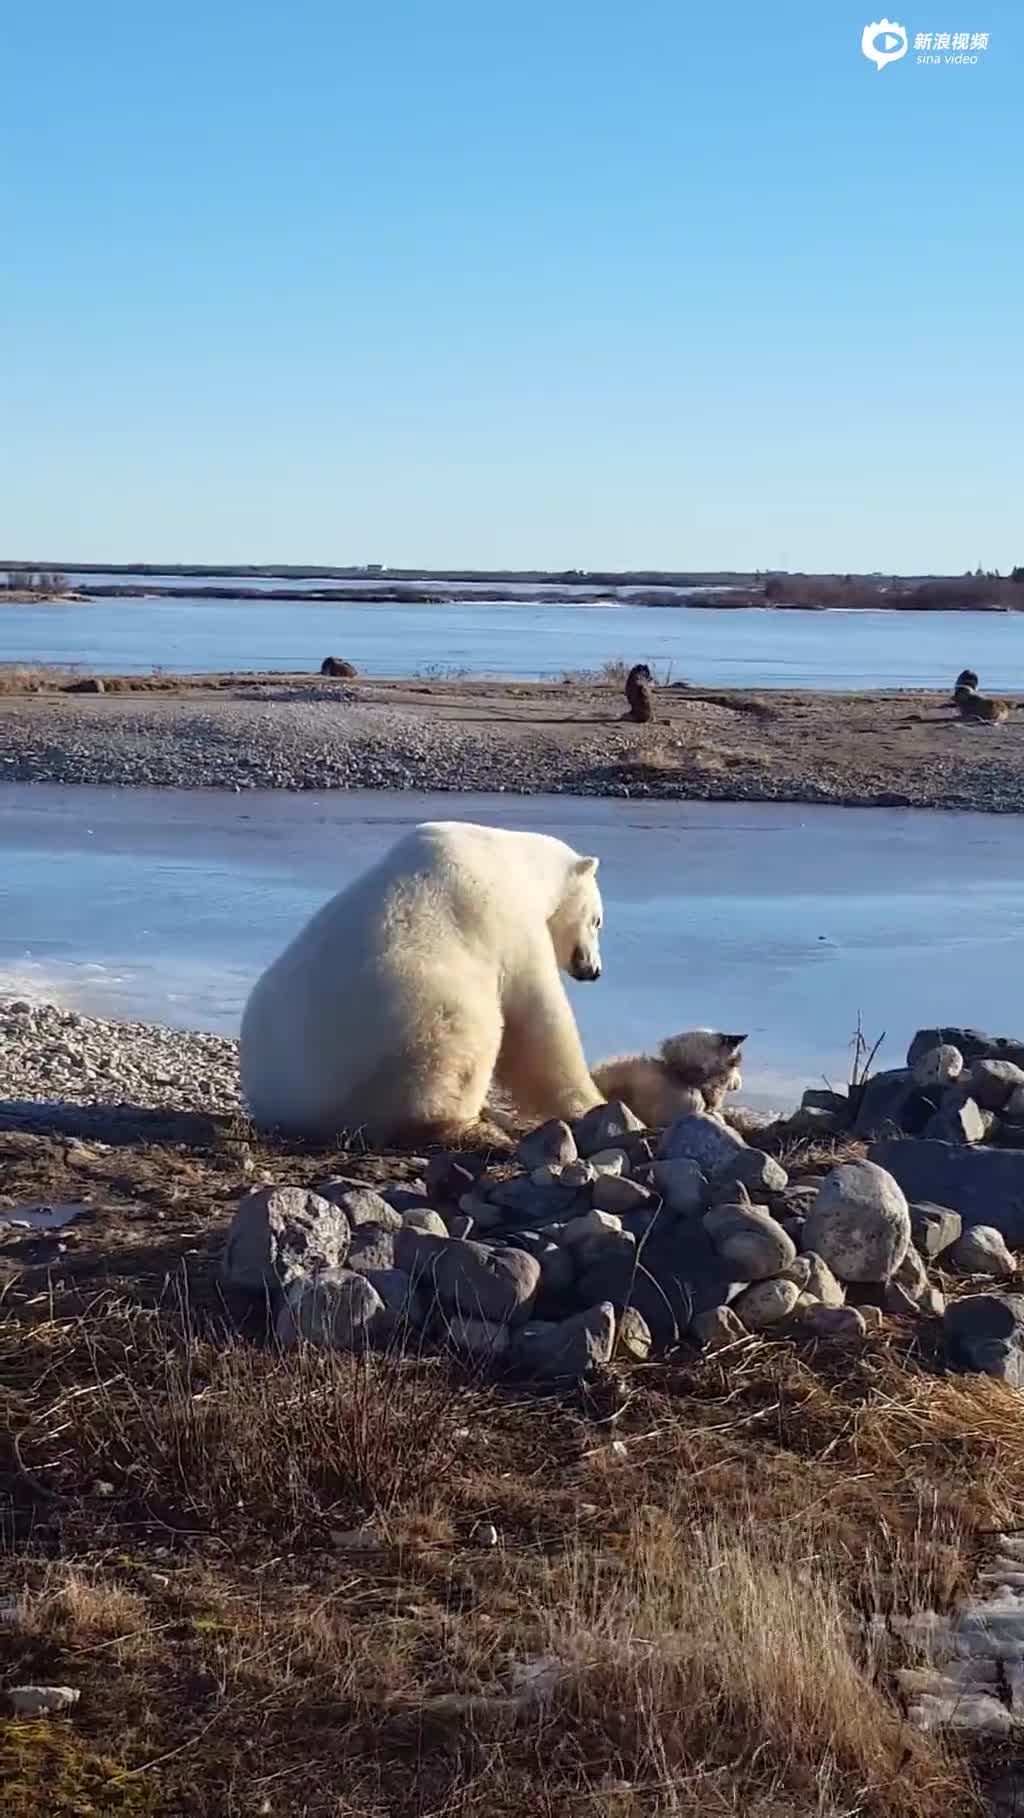 实拍北极熊向雪橇犬示好 上演“摸头杀”